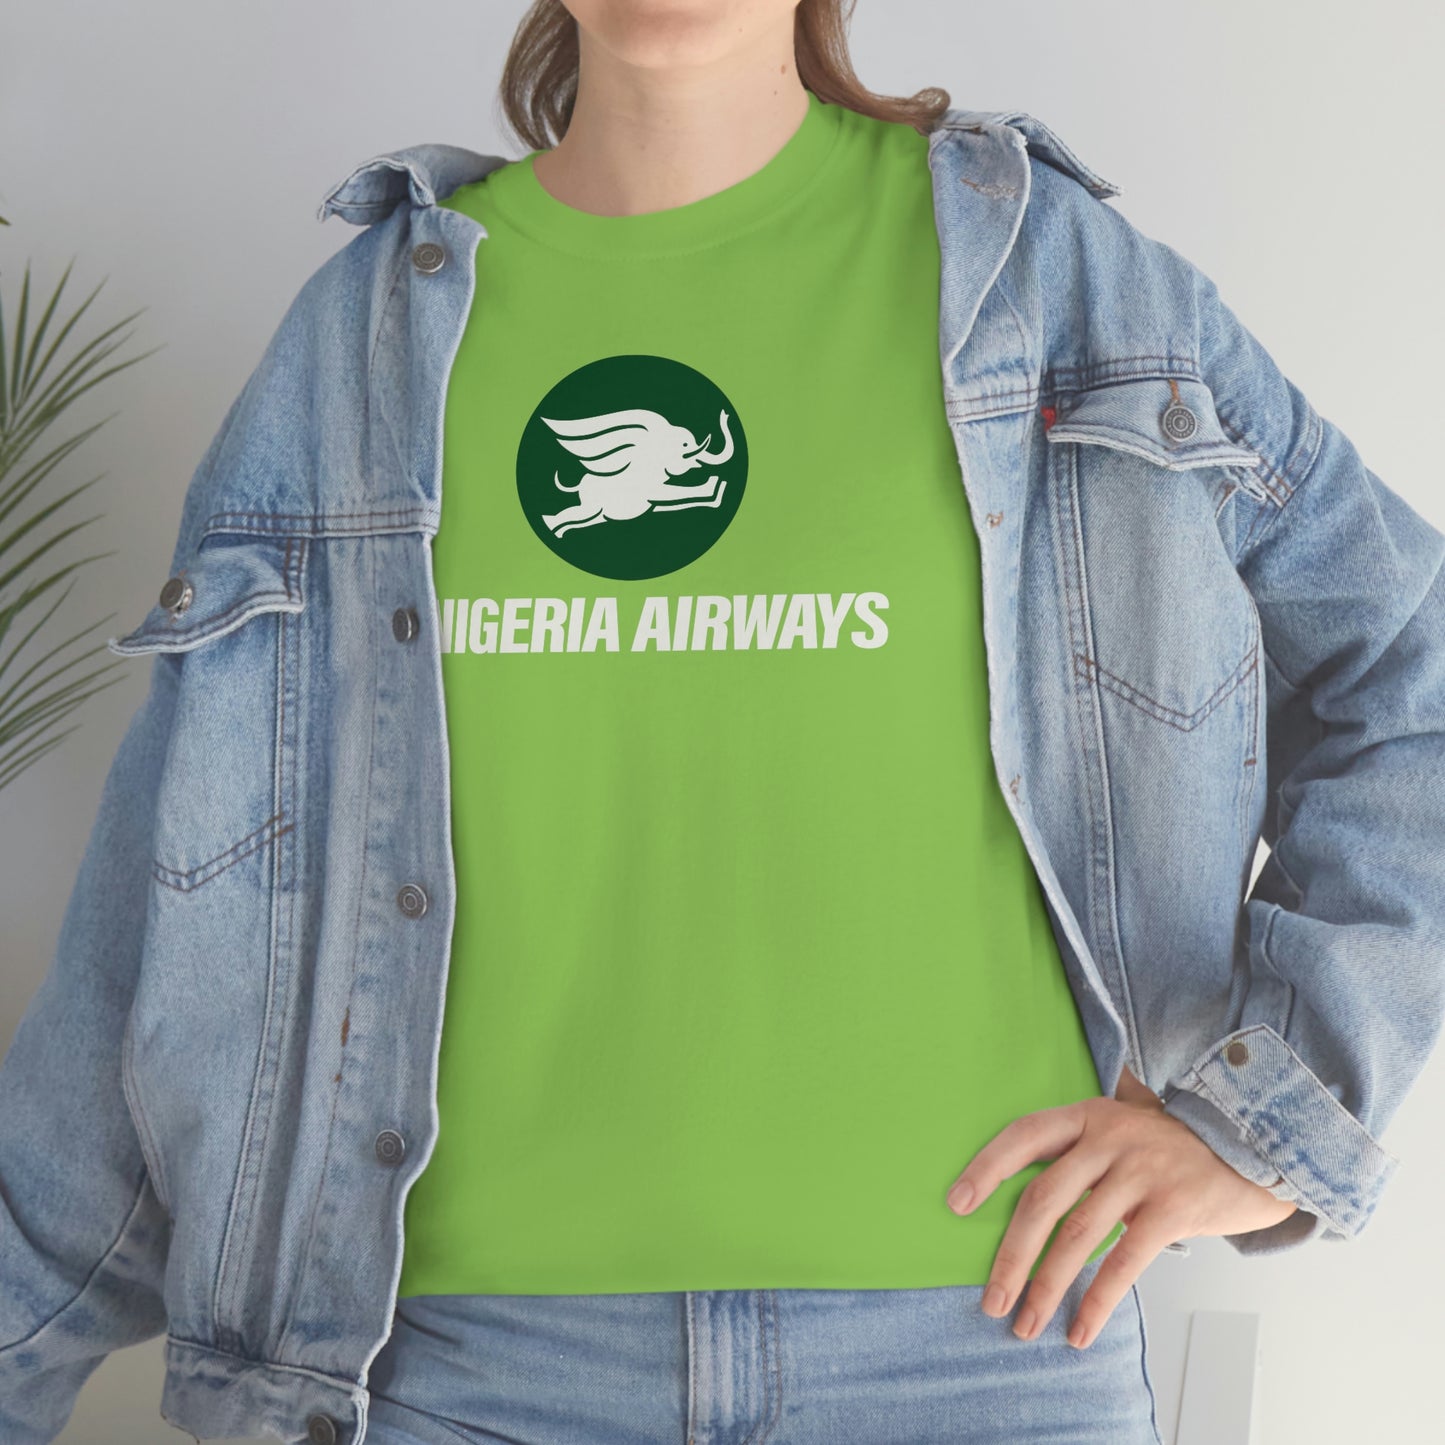 Nigeria Airways T-Shirt